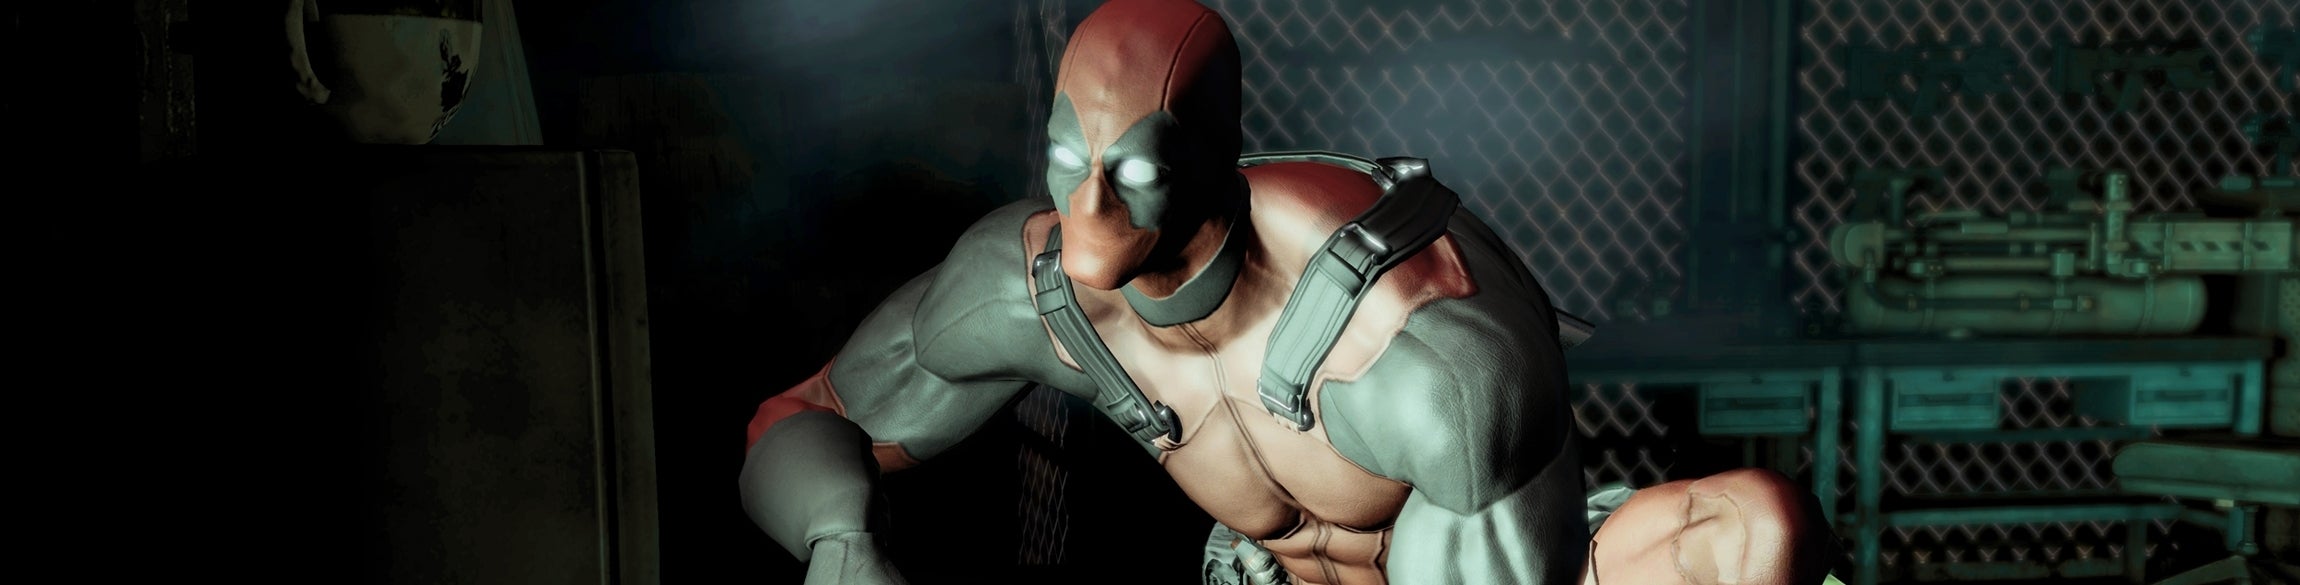 Afbeeldingen van Deadpool stelt twee nieuwe personages voor